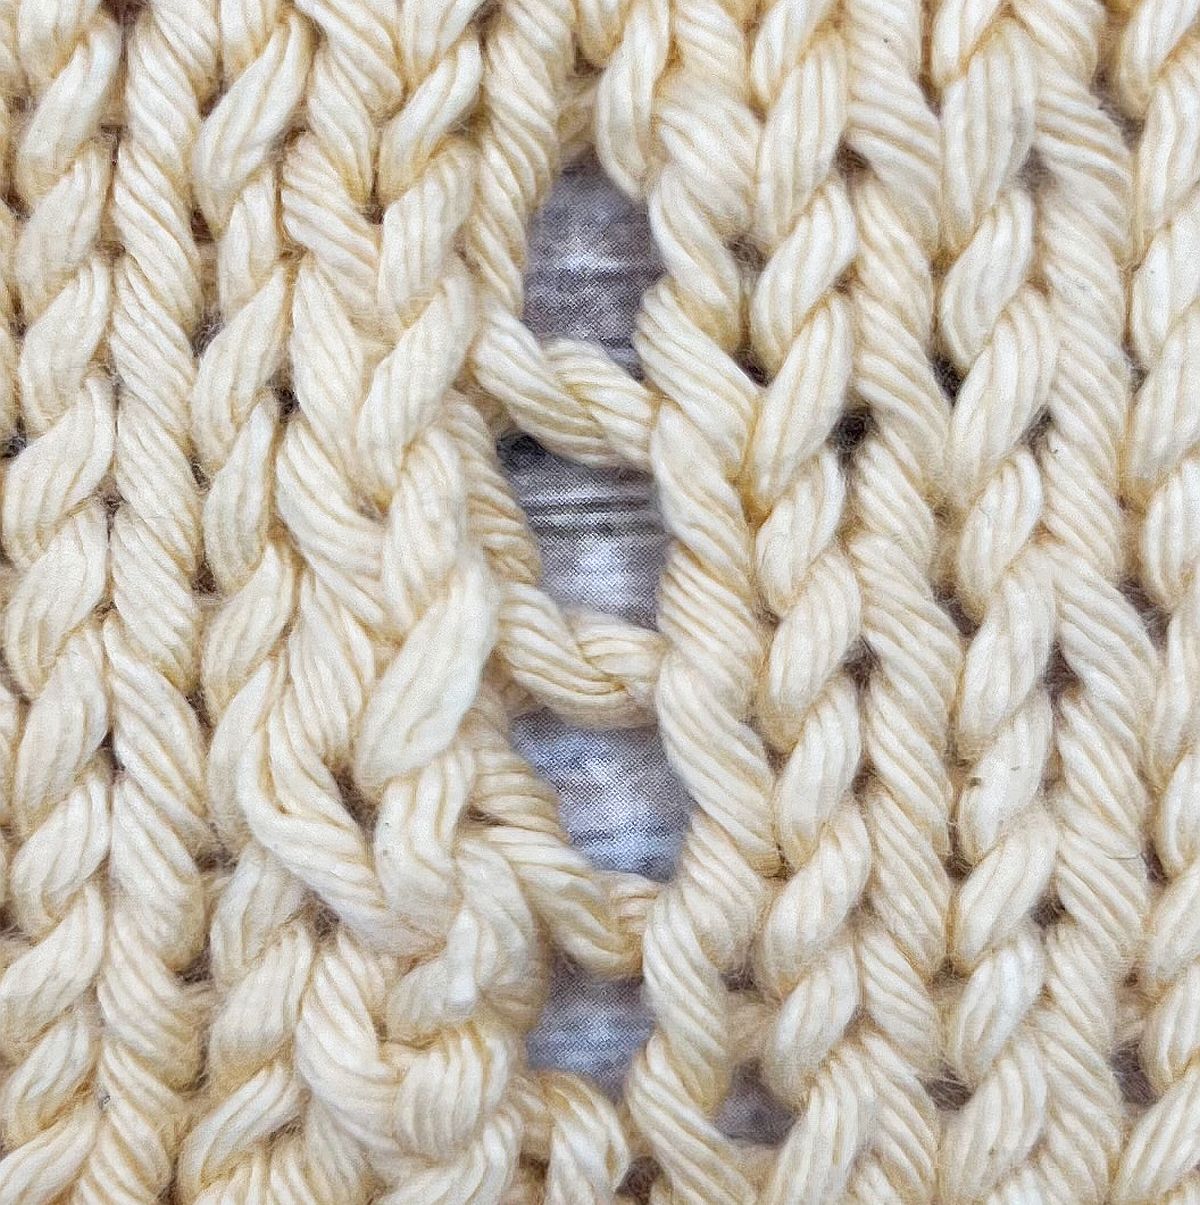 Umschlag stricken (yarn over)